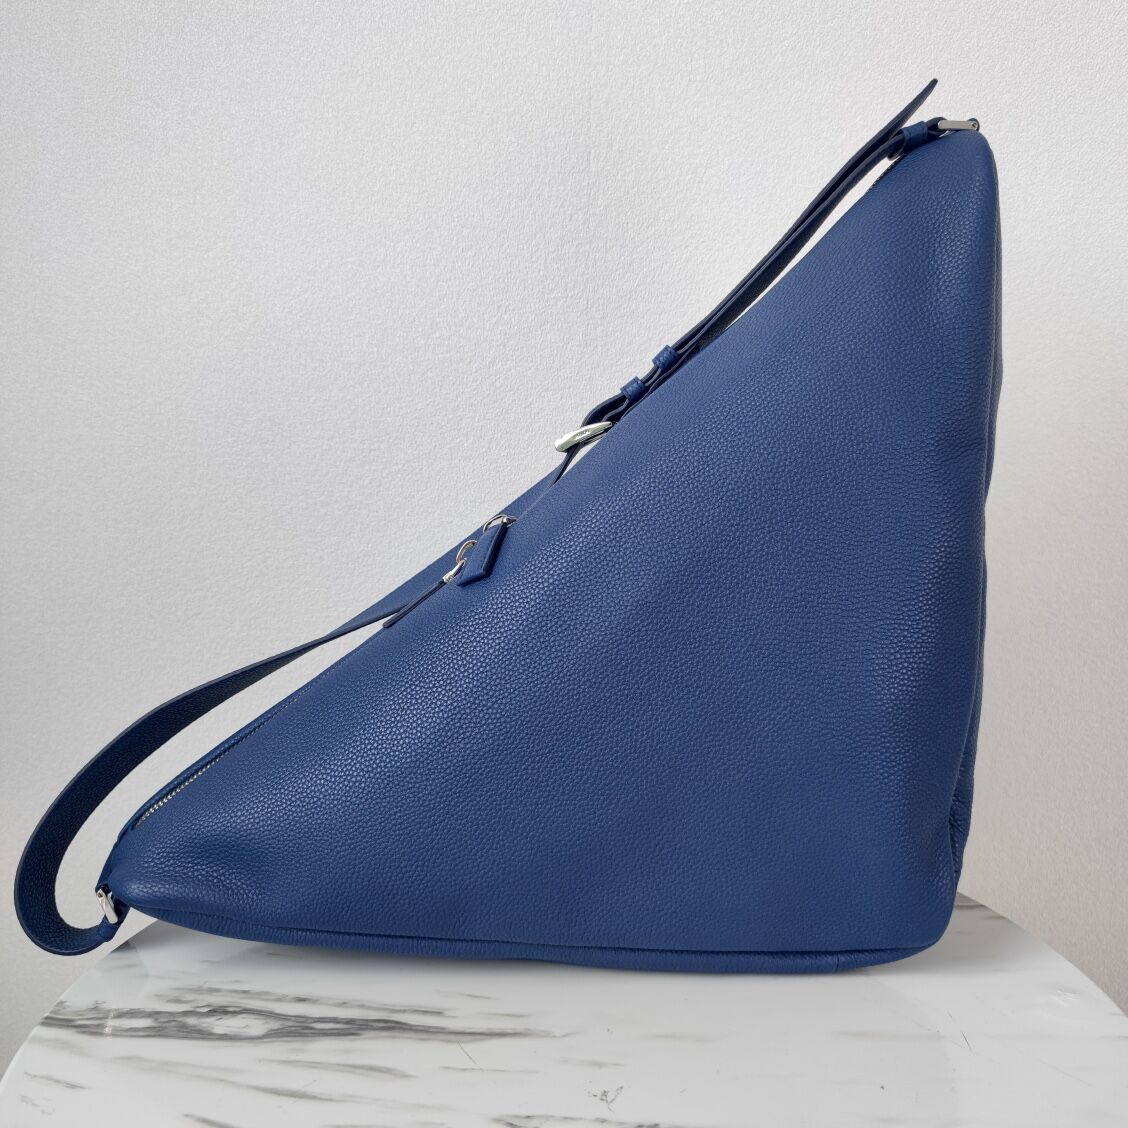 Prada Deer skin Leather Triangle shoulder bag 2VD012 blue